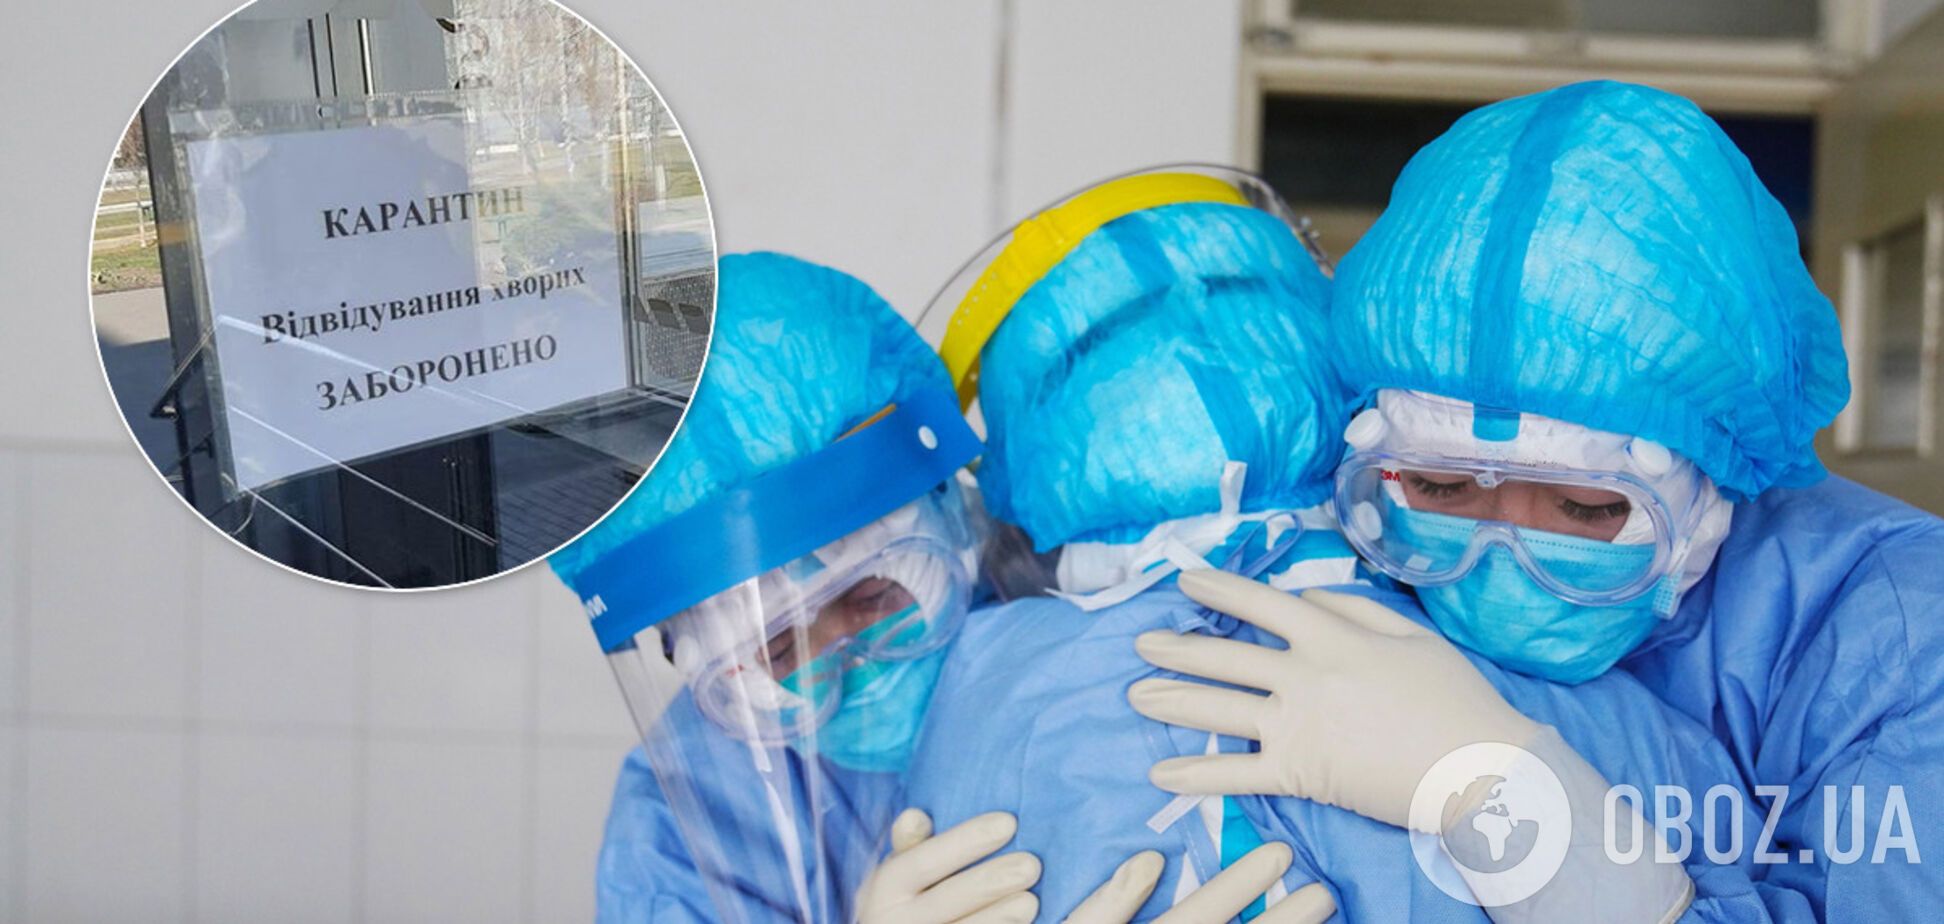 Медиків лікарні в Києві 'кинули' в боротьбі з коронавірусом: три костюми й одні окуляри на всіх